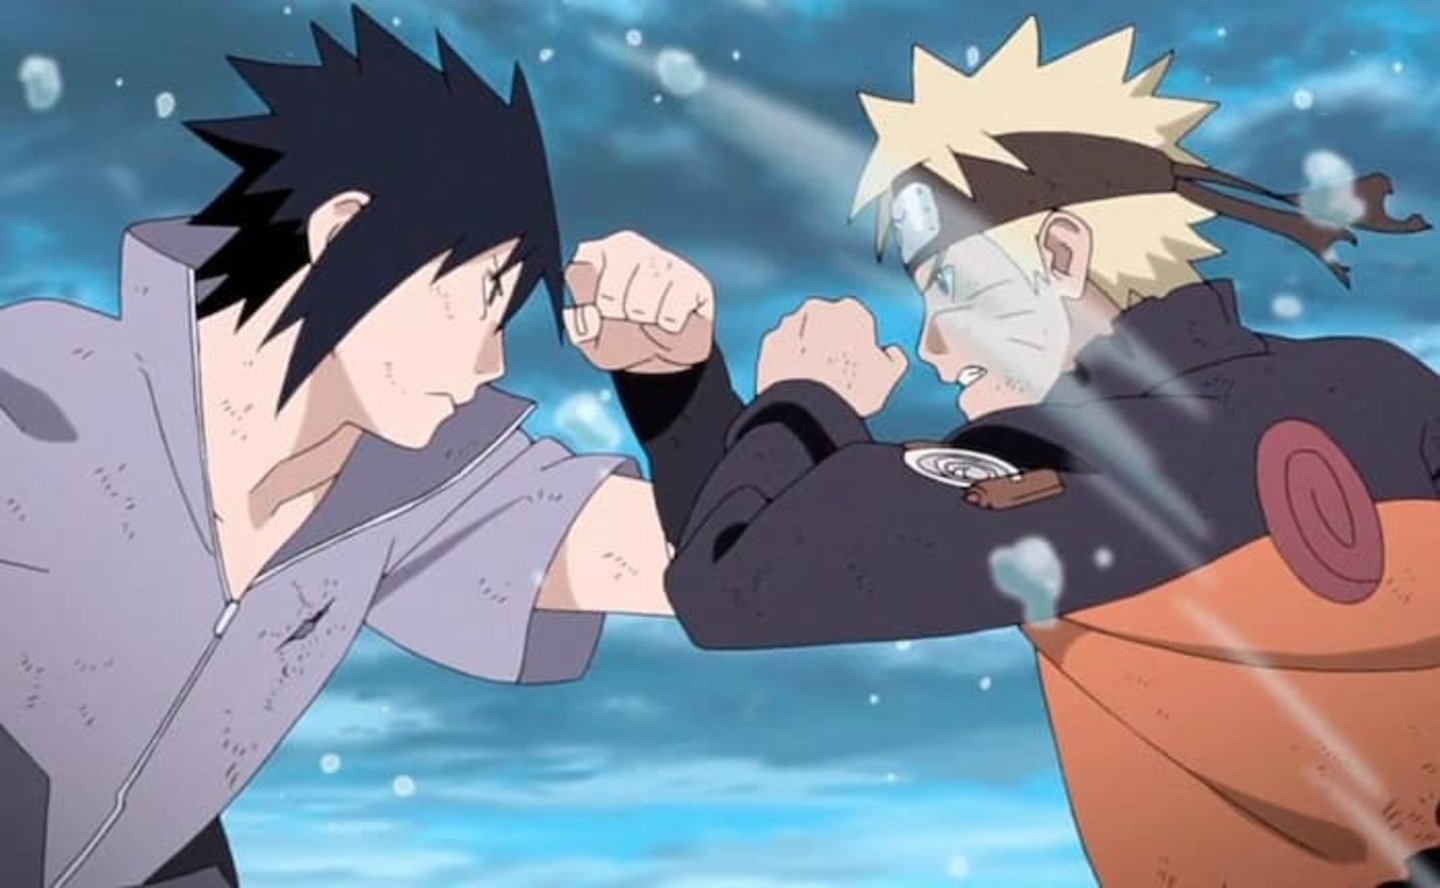 Una nueva encuesta especial de Naruto ha dado inicio para elegir cuál es la mejor batalla de la serie